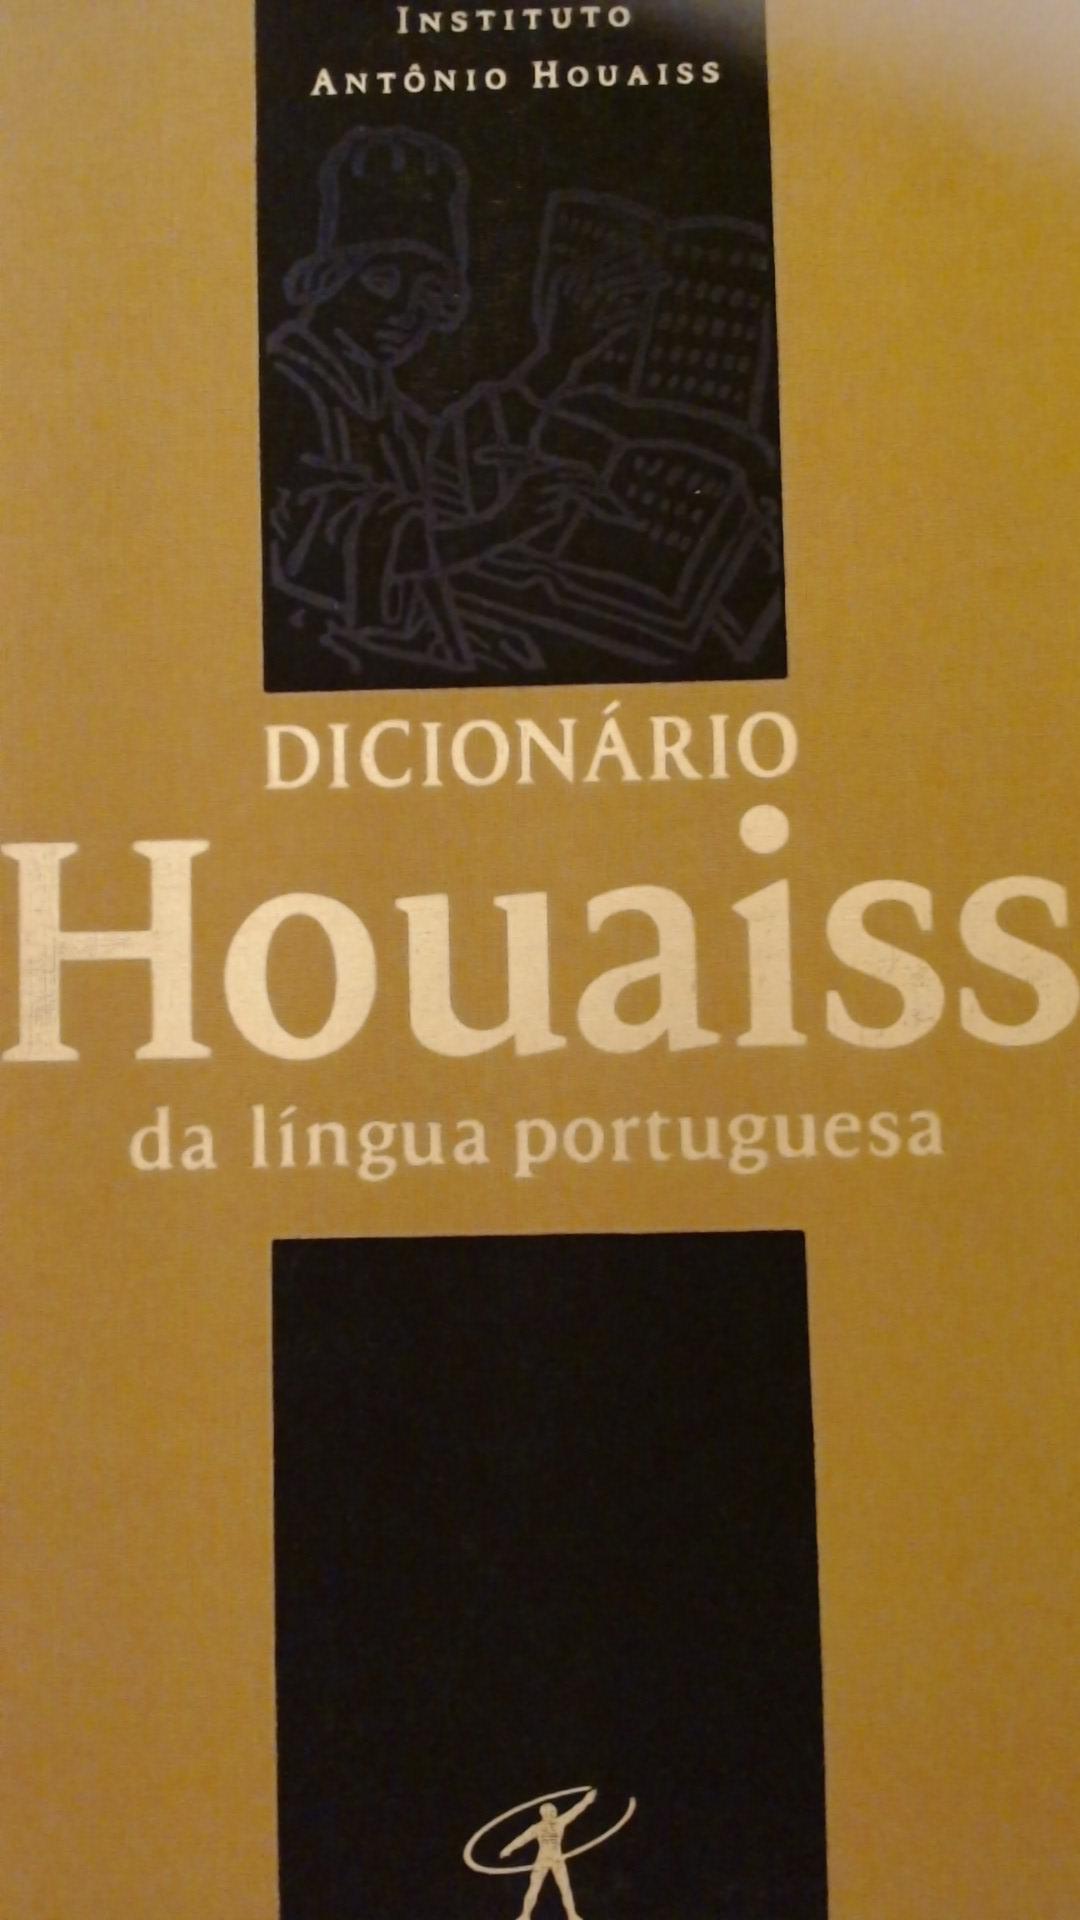 Dicionário Houaiss Da Língua Portuguesa (2001)